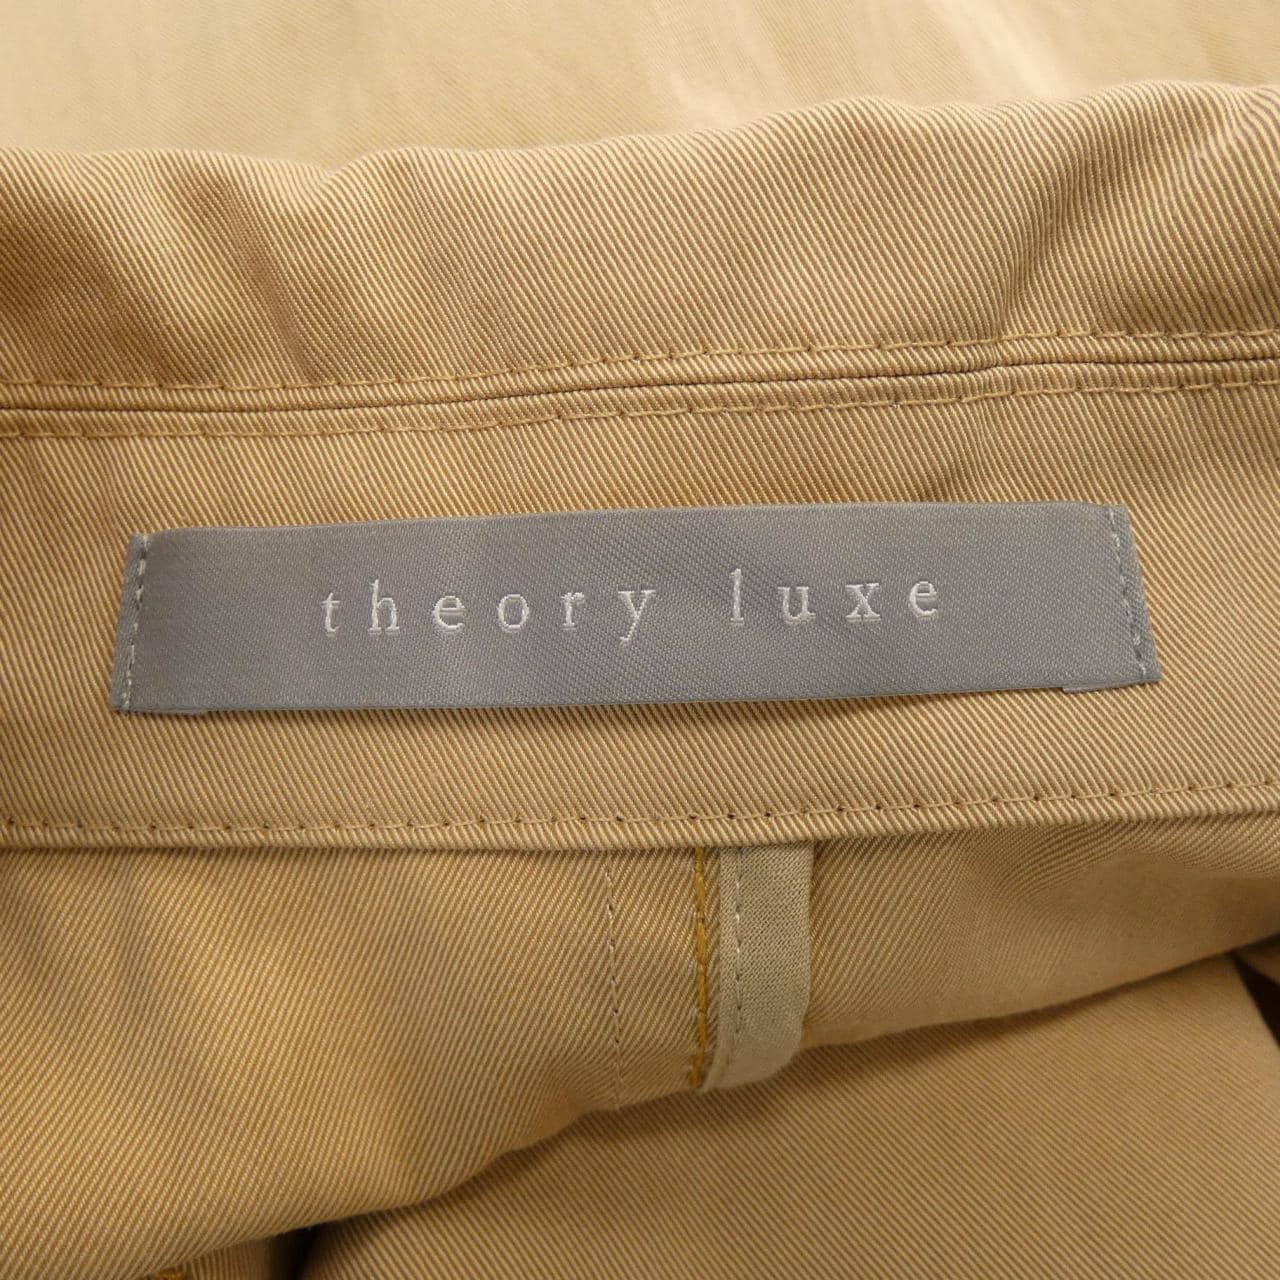 塞奥莉露Theory luxe大衣